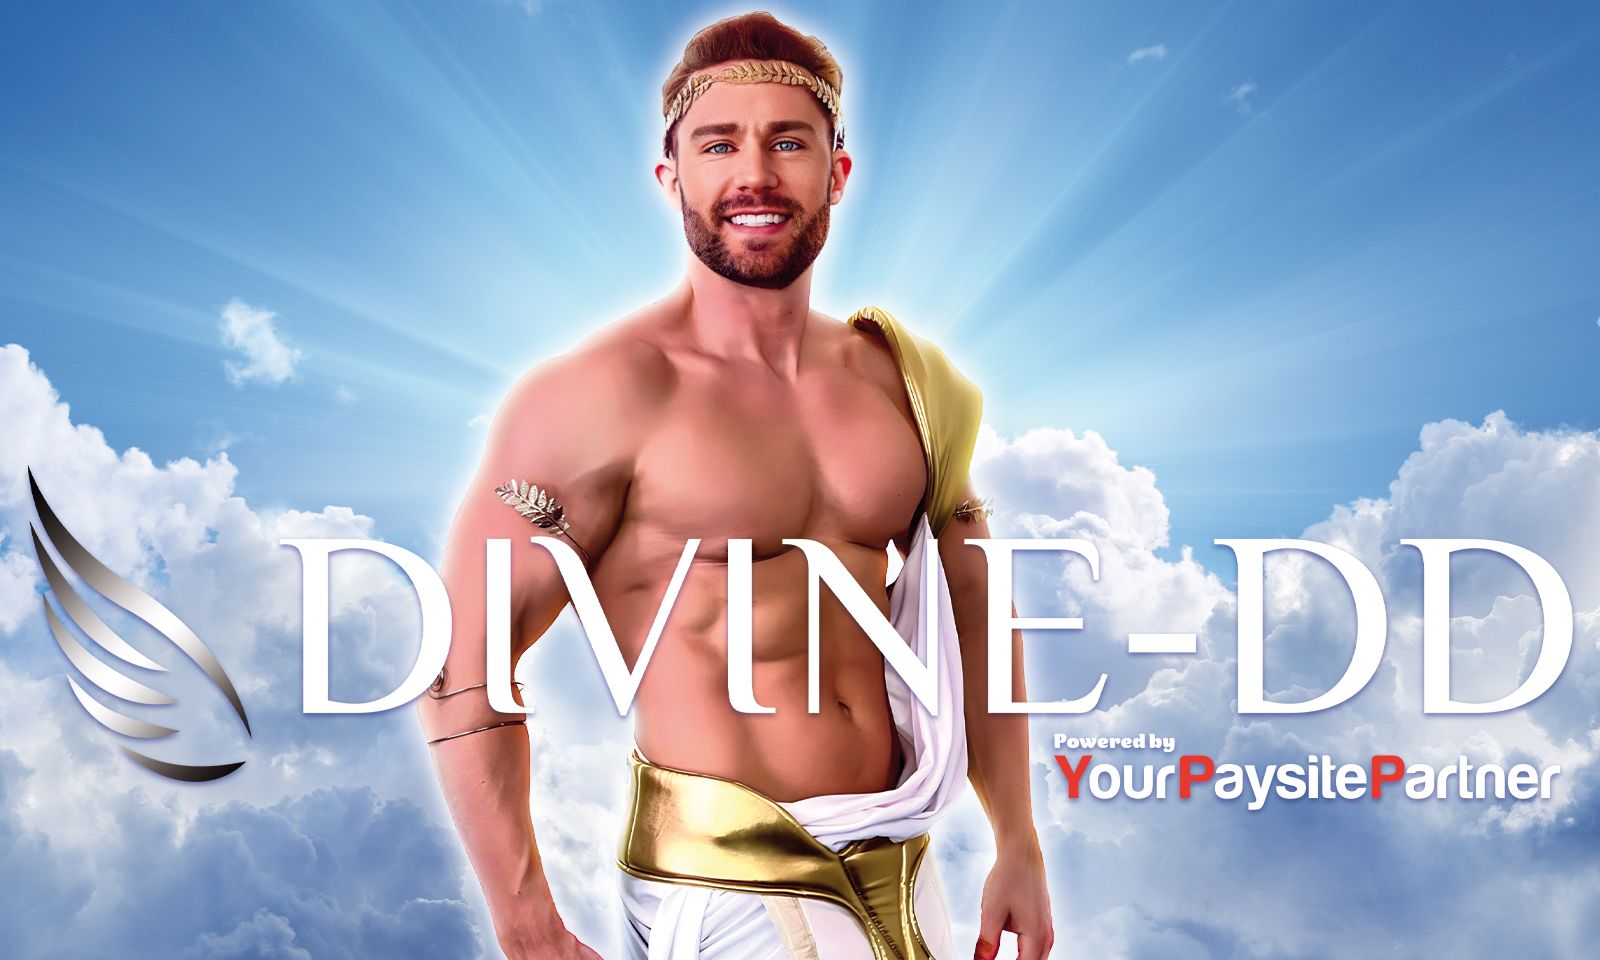 Sam Shock Launches Divine-DD.com Through YourPaysitePartner | AVN